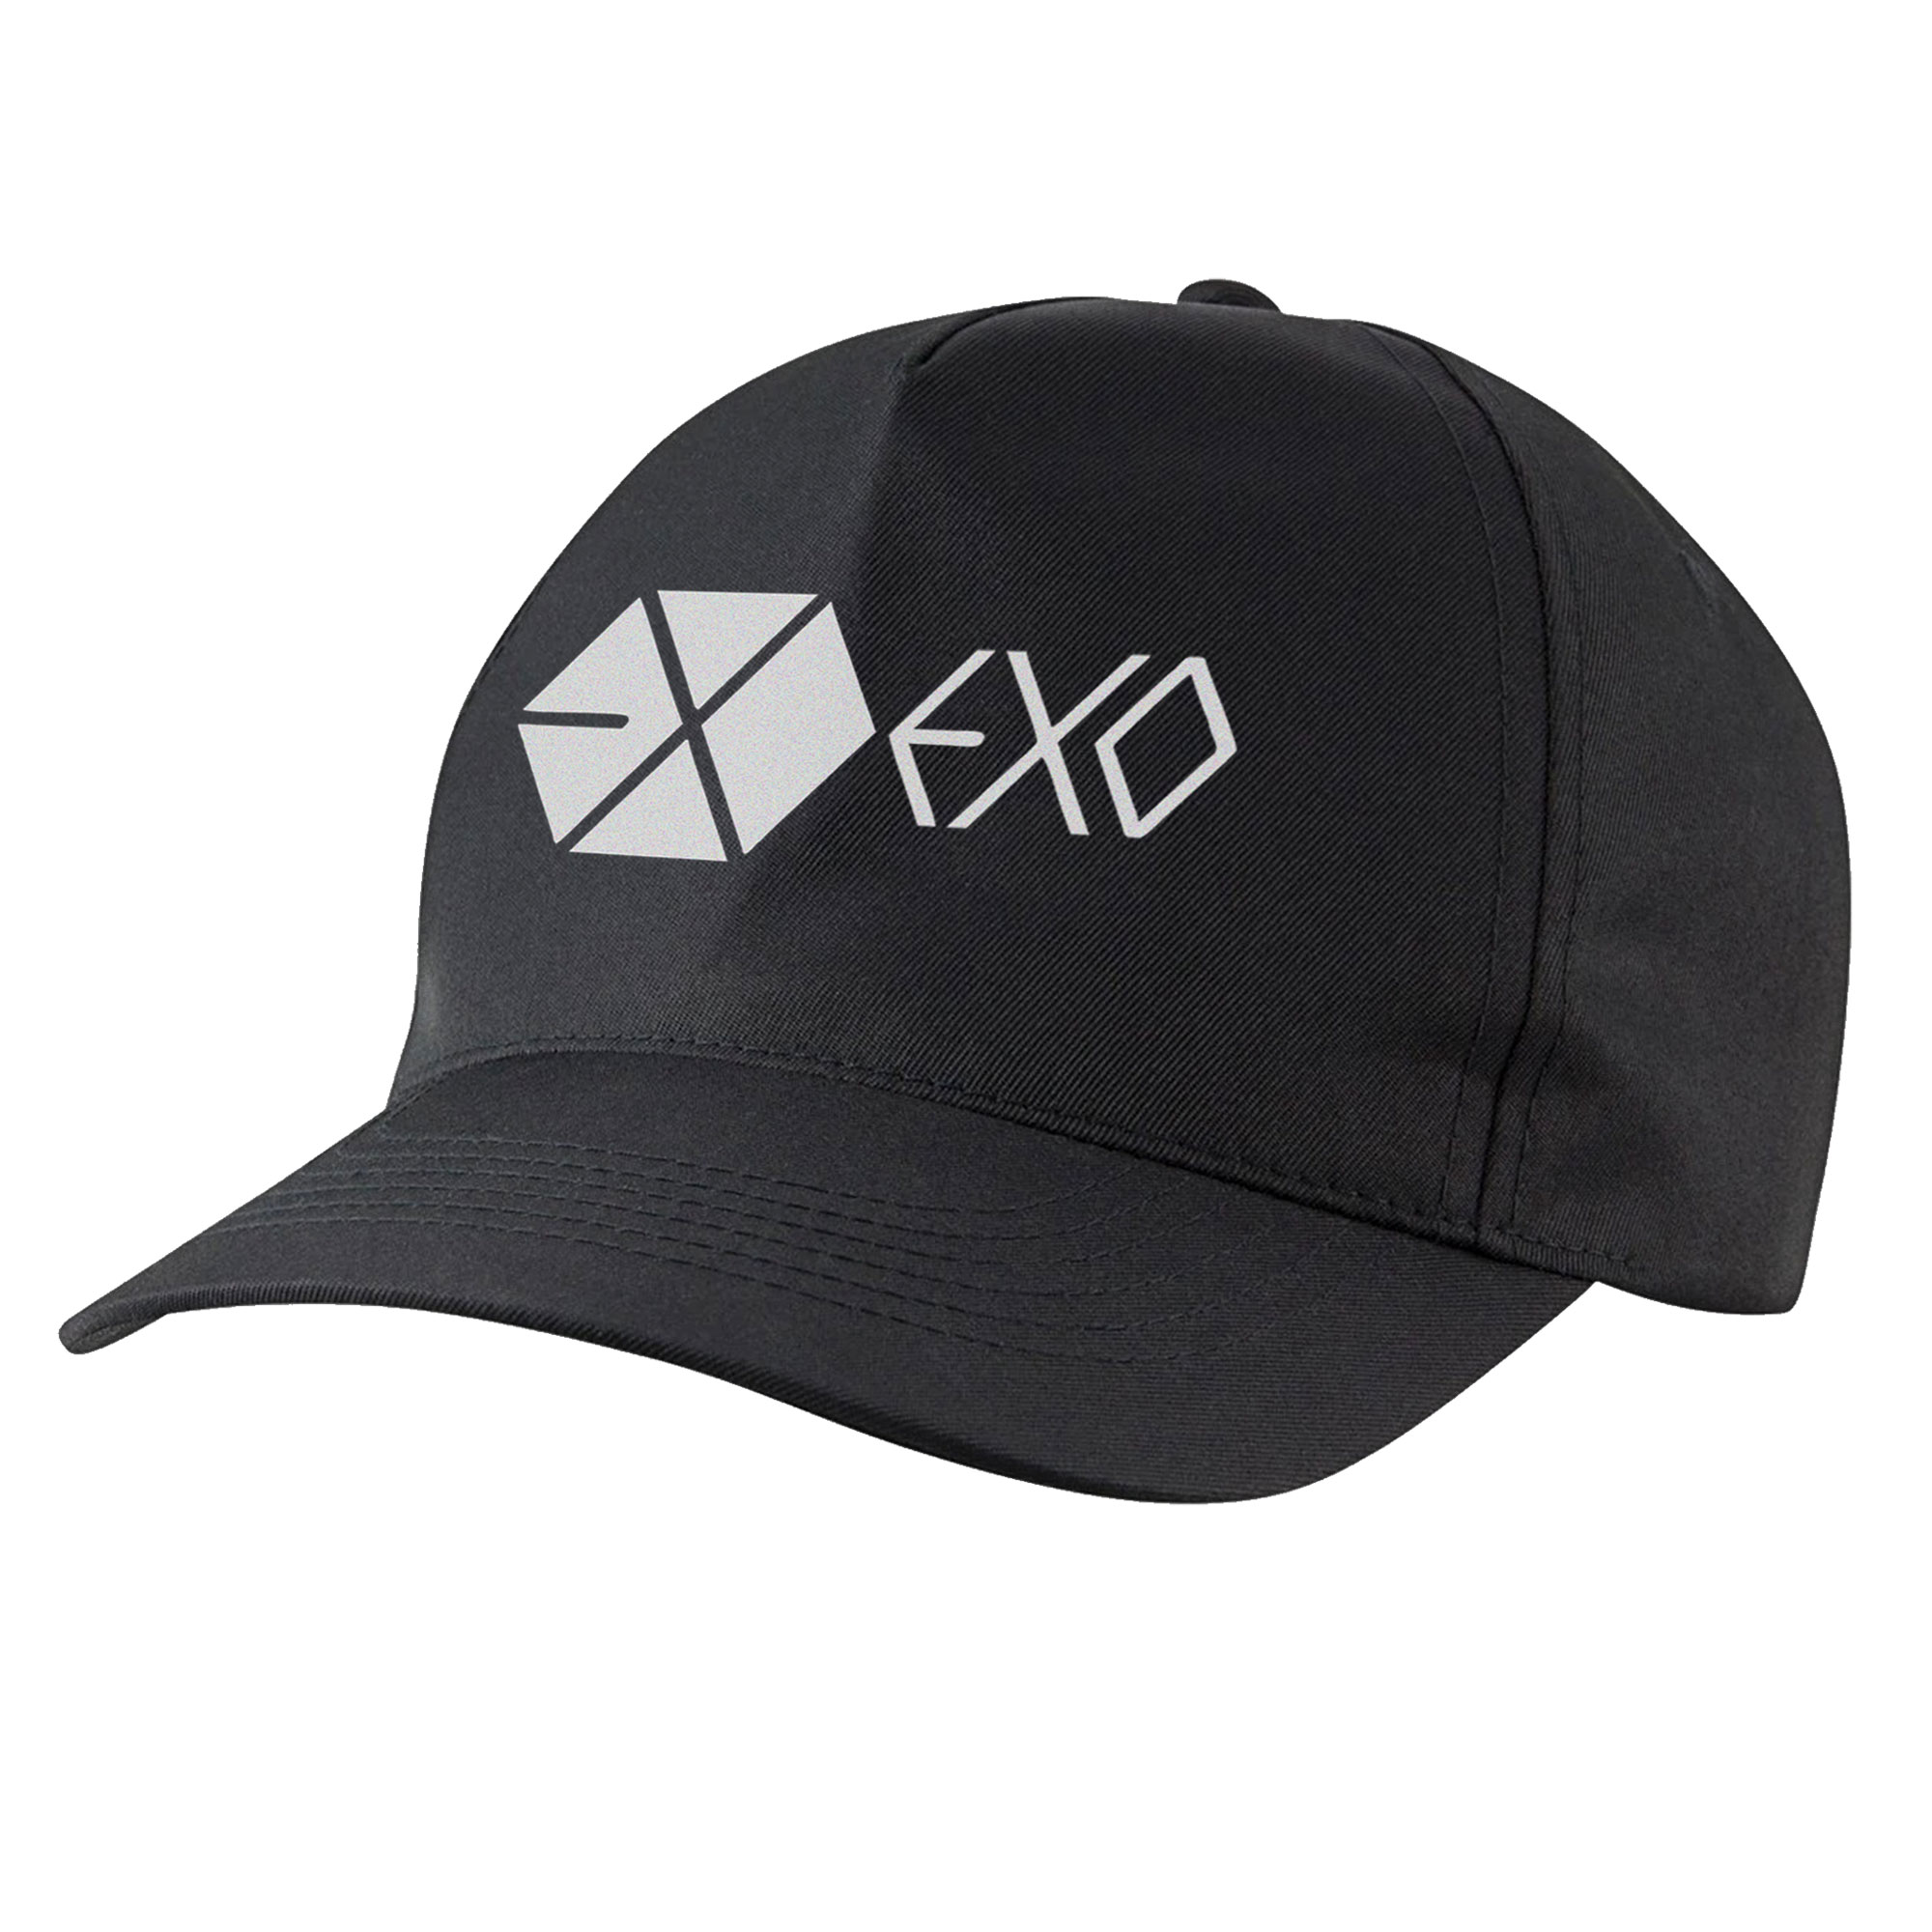 نکته خرید - قیمت روز کلاه کپ مدل گروه موسیقی exo کد bb-27 خرید